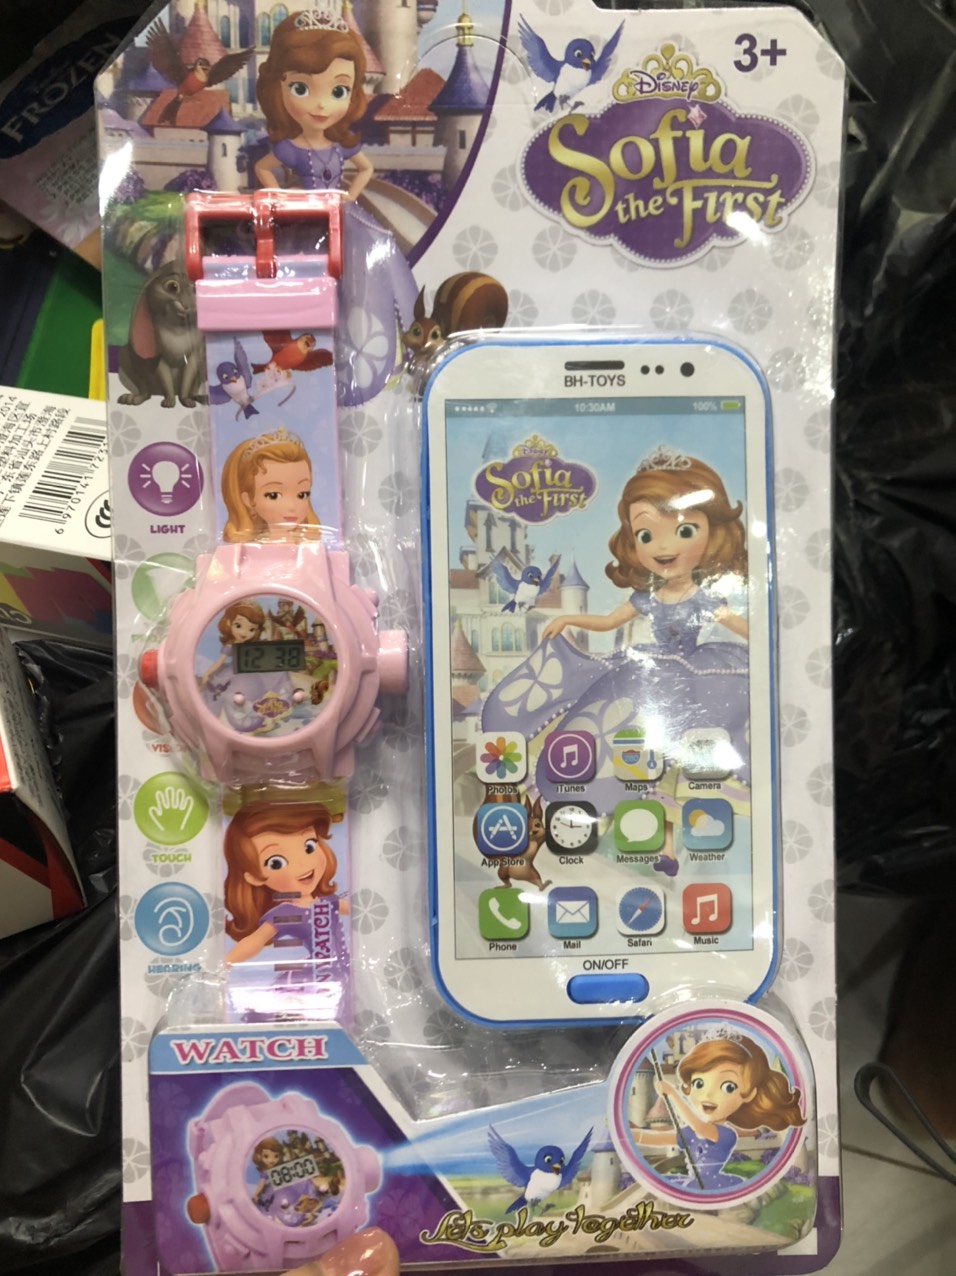 Đồng hồ đeo tay và điện thoại phát nhạc Elsa, các nhân vật hoạt hình - Set đồ chơi cho bé - Time365